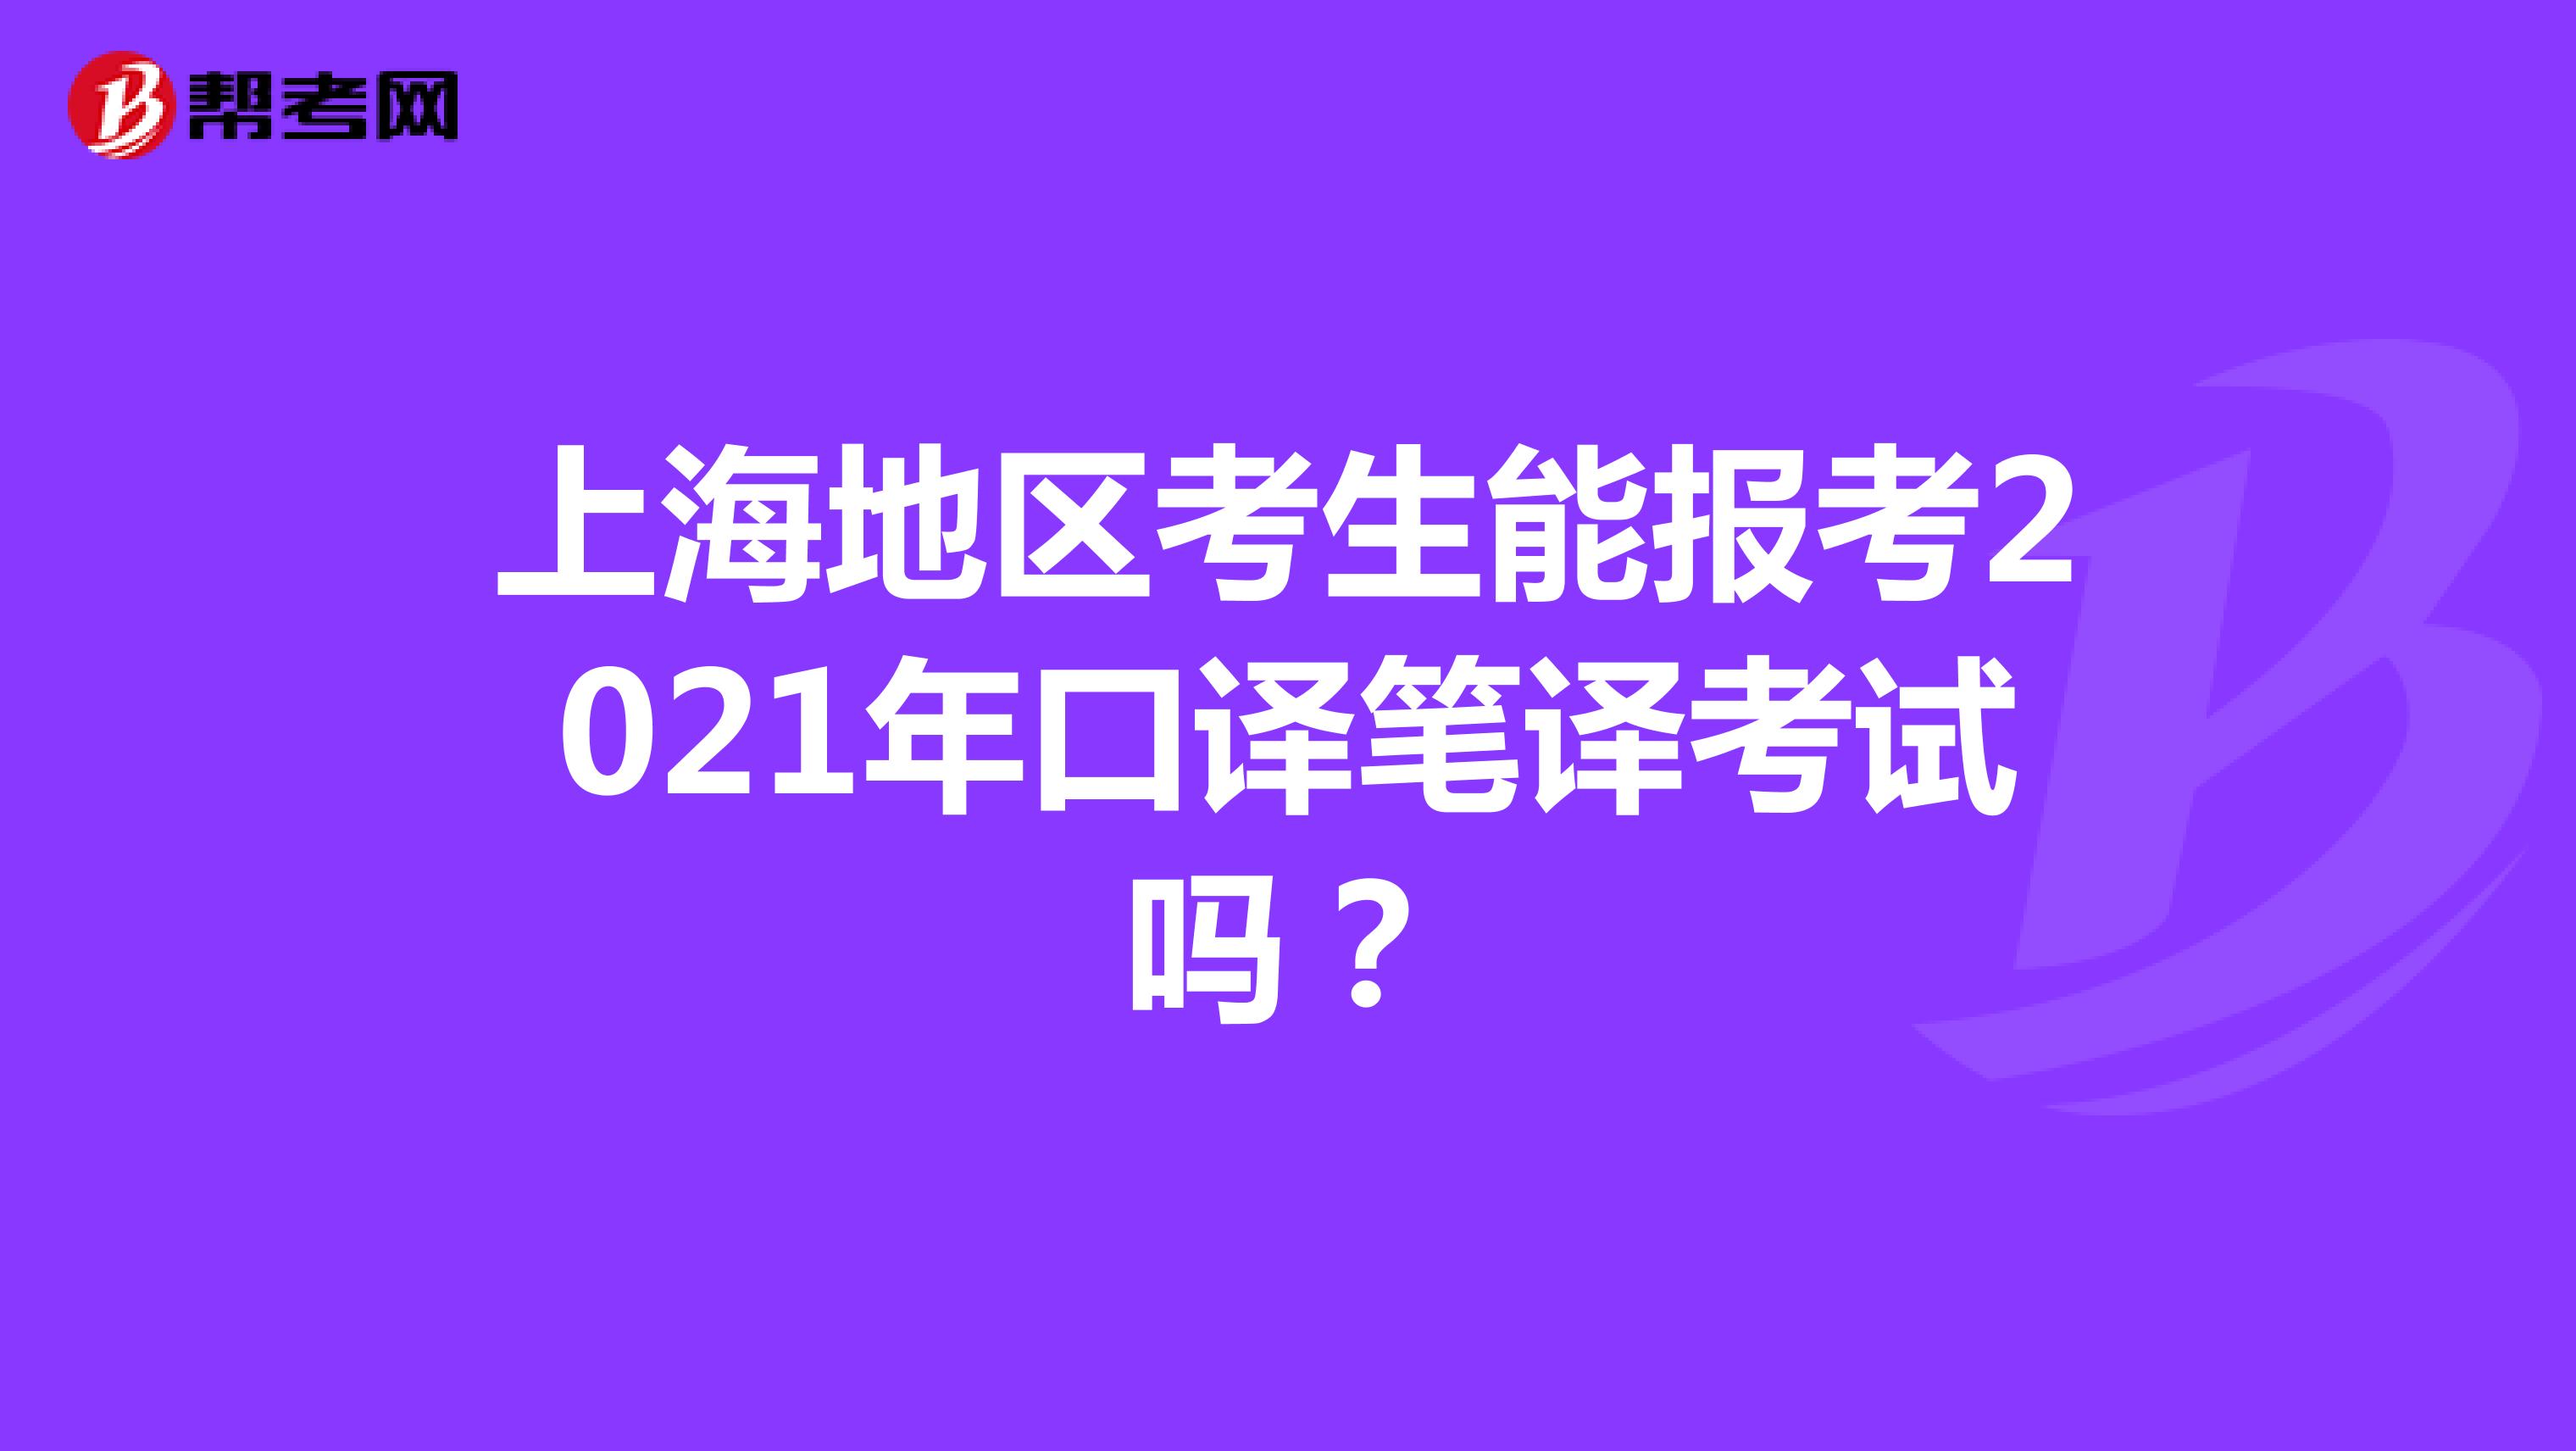 上海地区考生能报考2021年口译笔译考试吗？